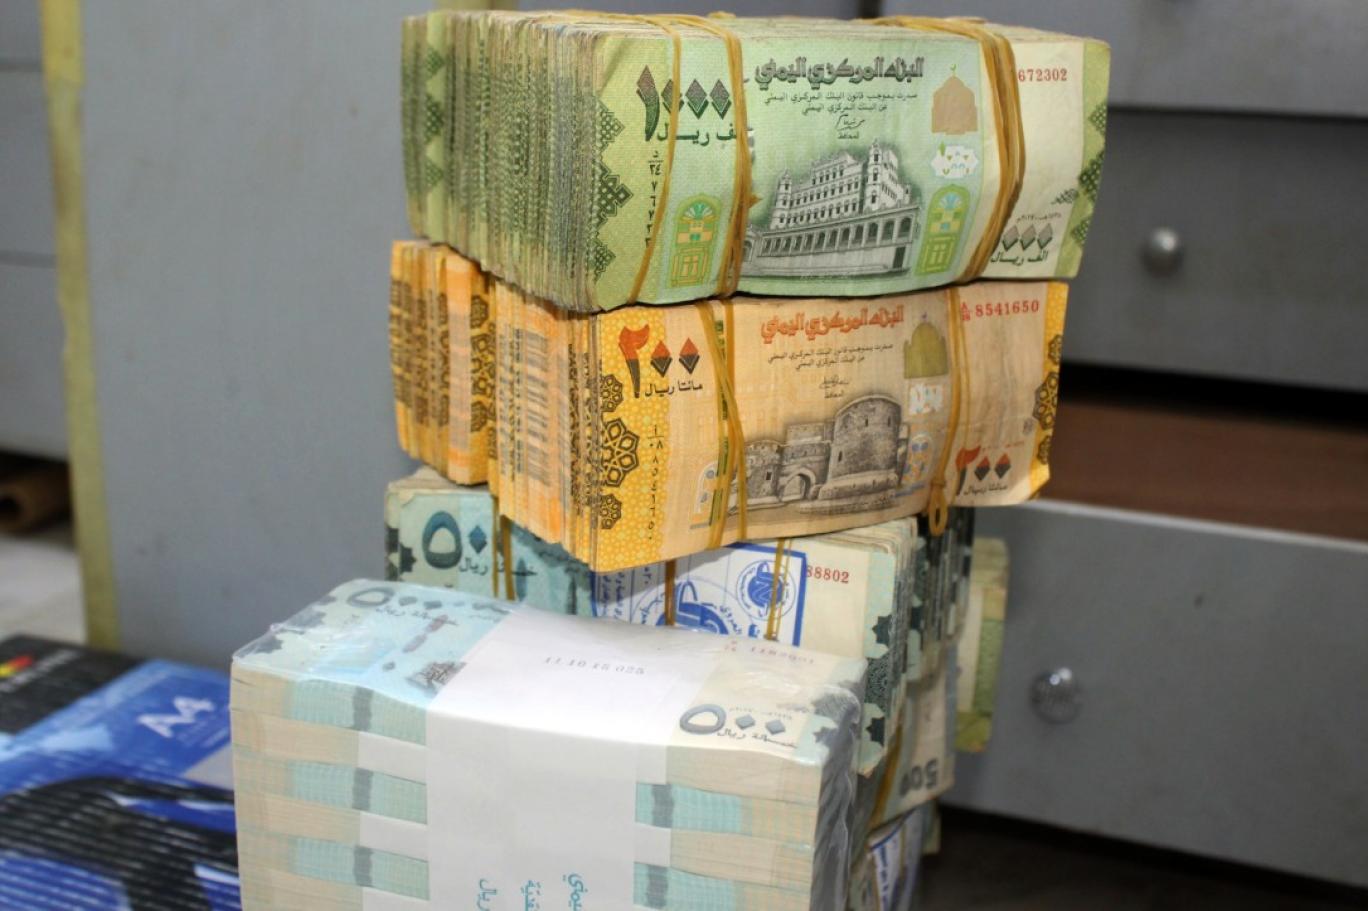 عاجل الآن: تغيرات متسارعة في قيمة الريال اليمني أمام العملات الأجنبية وهذا هو آخر تحديث لأسعار الصرف مساء اليوم السبت 